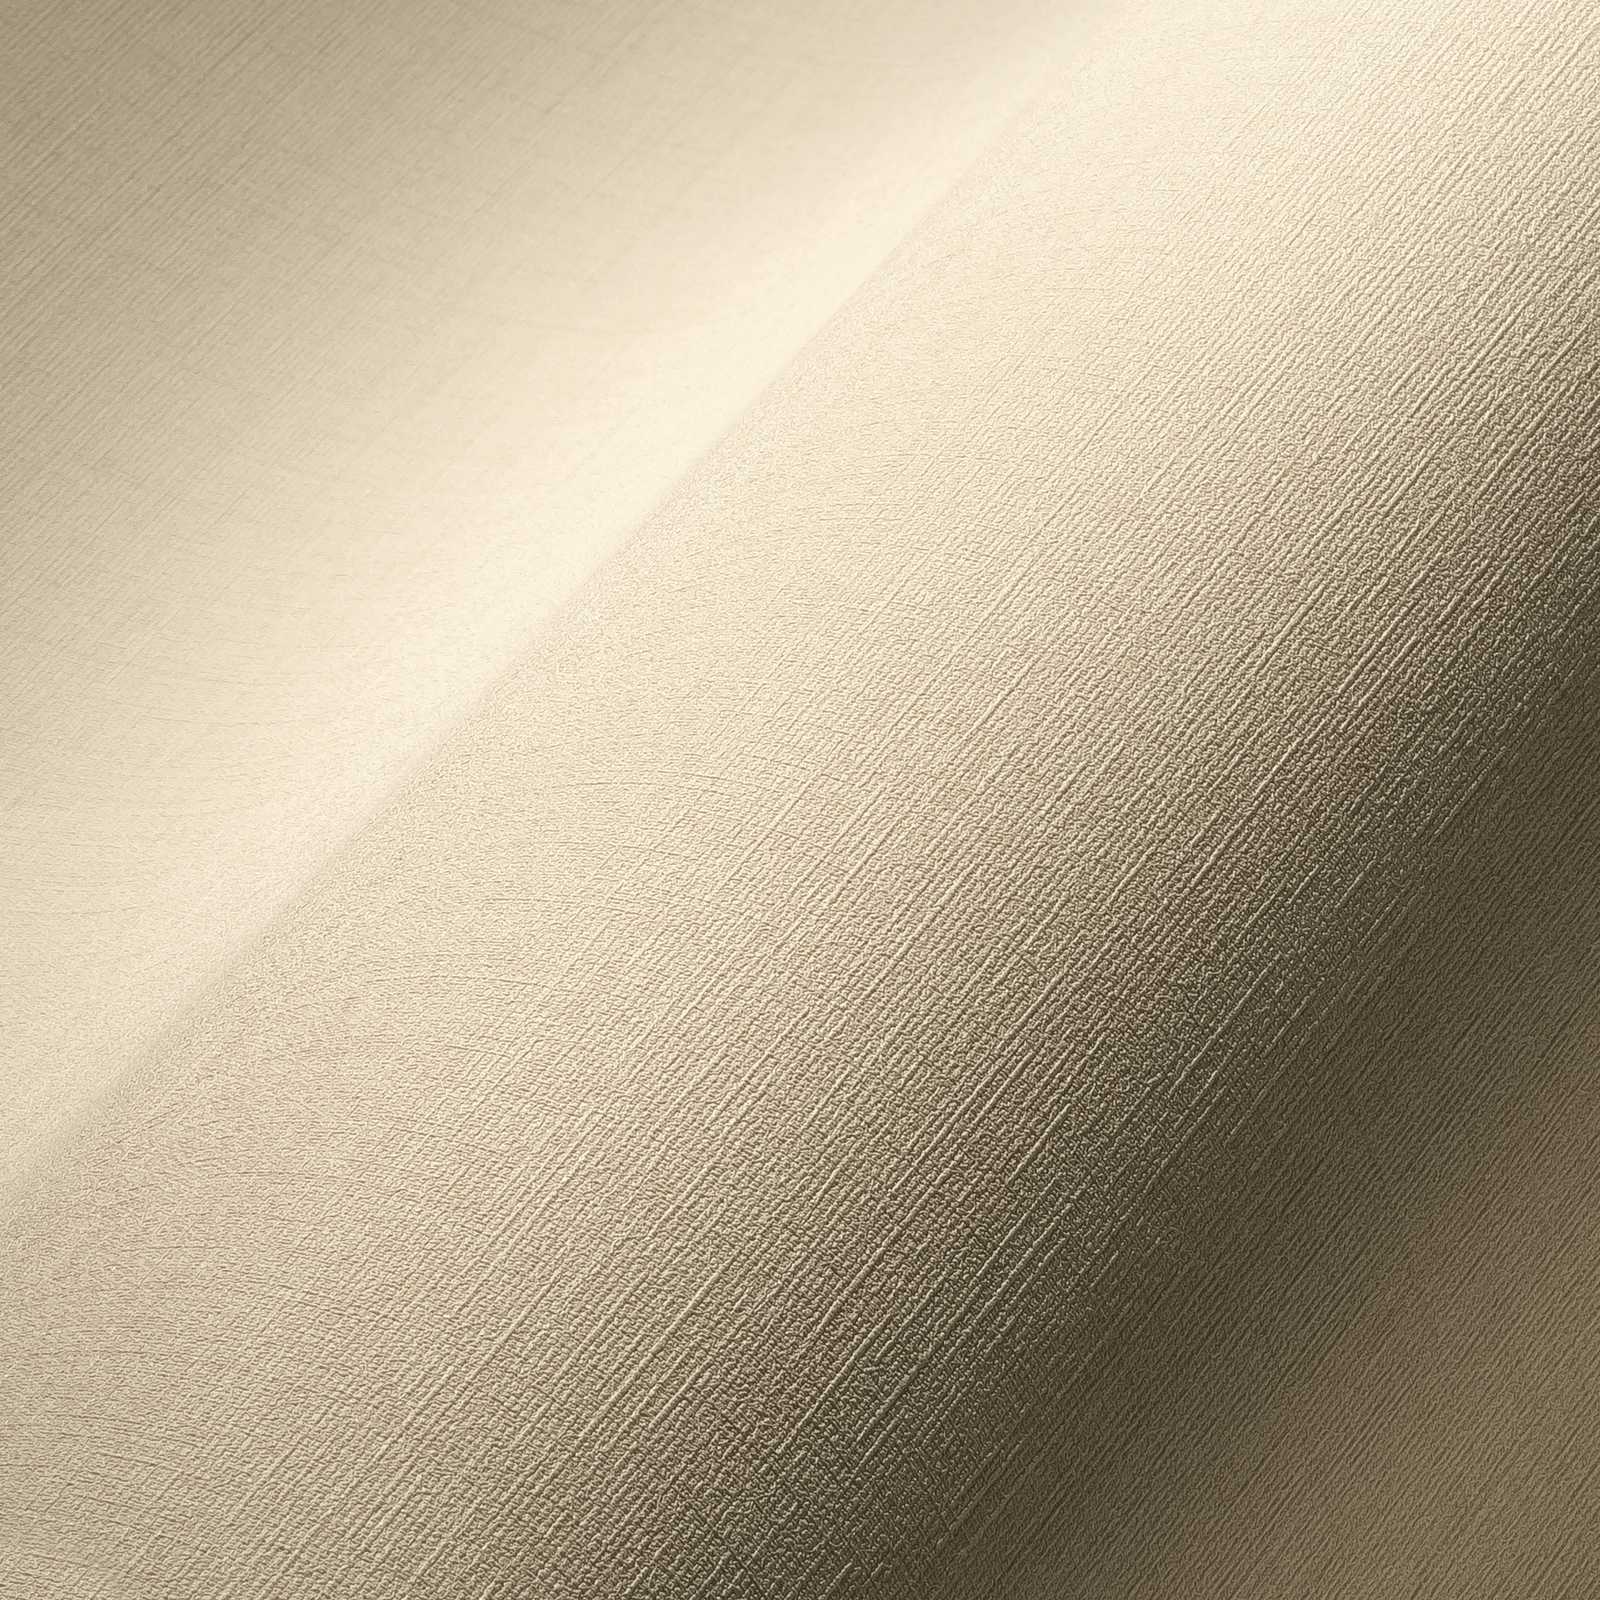             Non-woven wallpaper beige with linen texture, plain & mottled
        